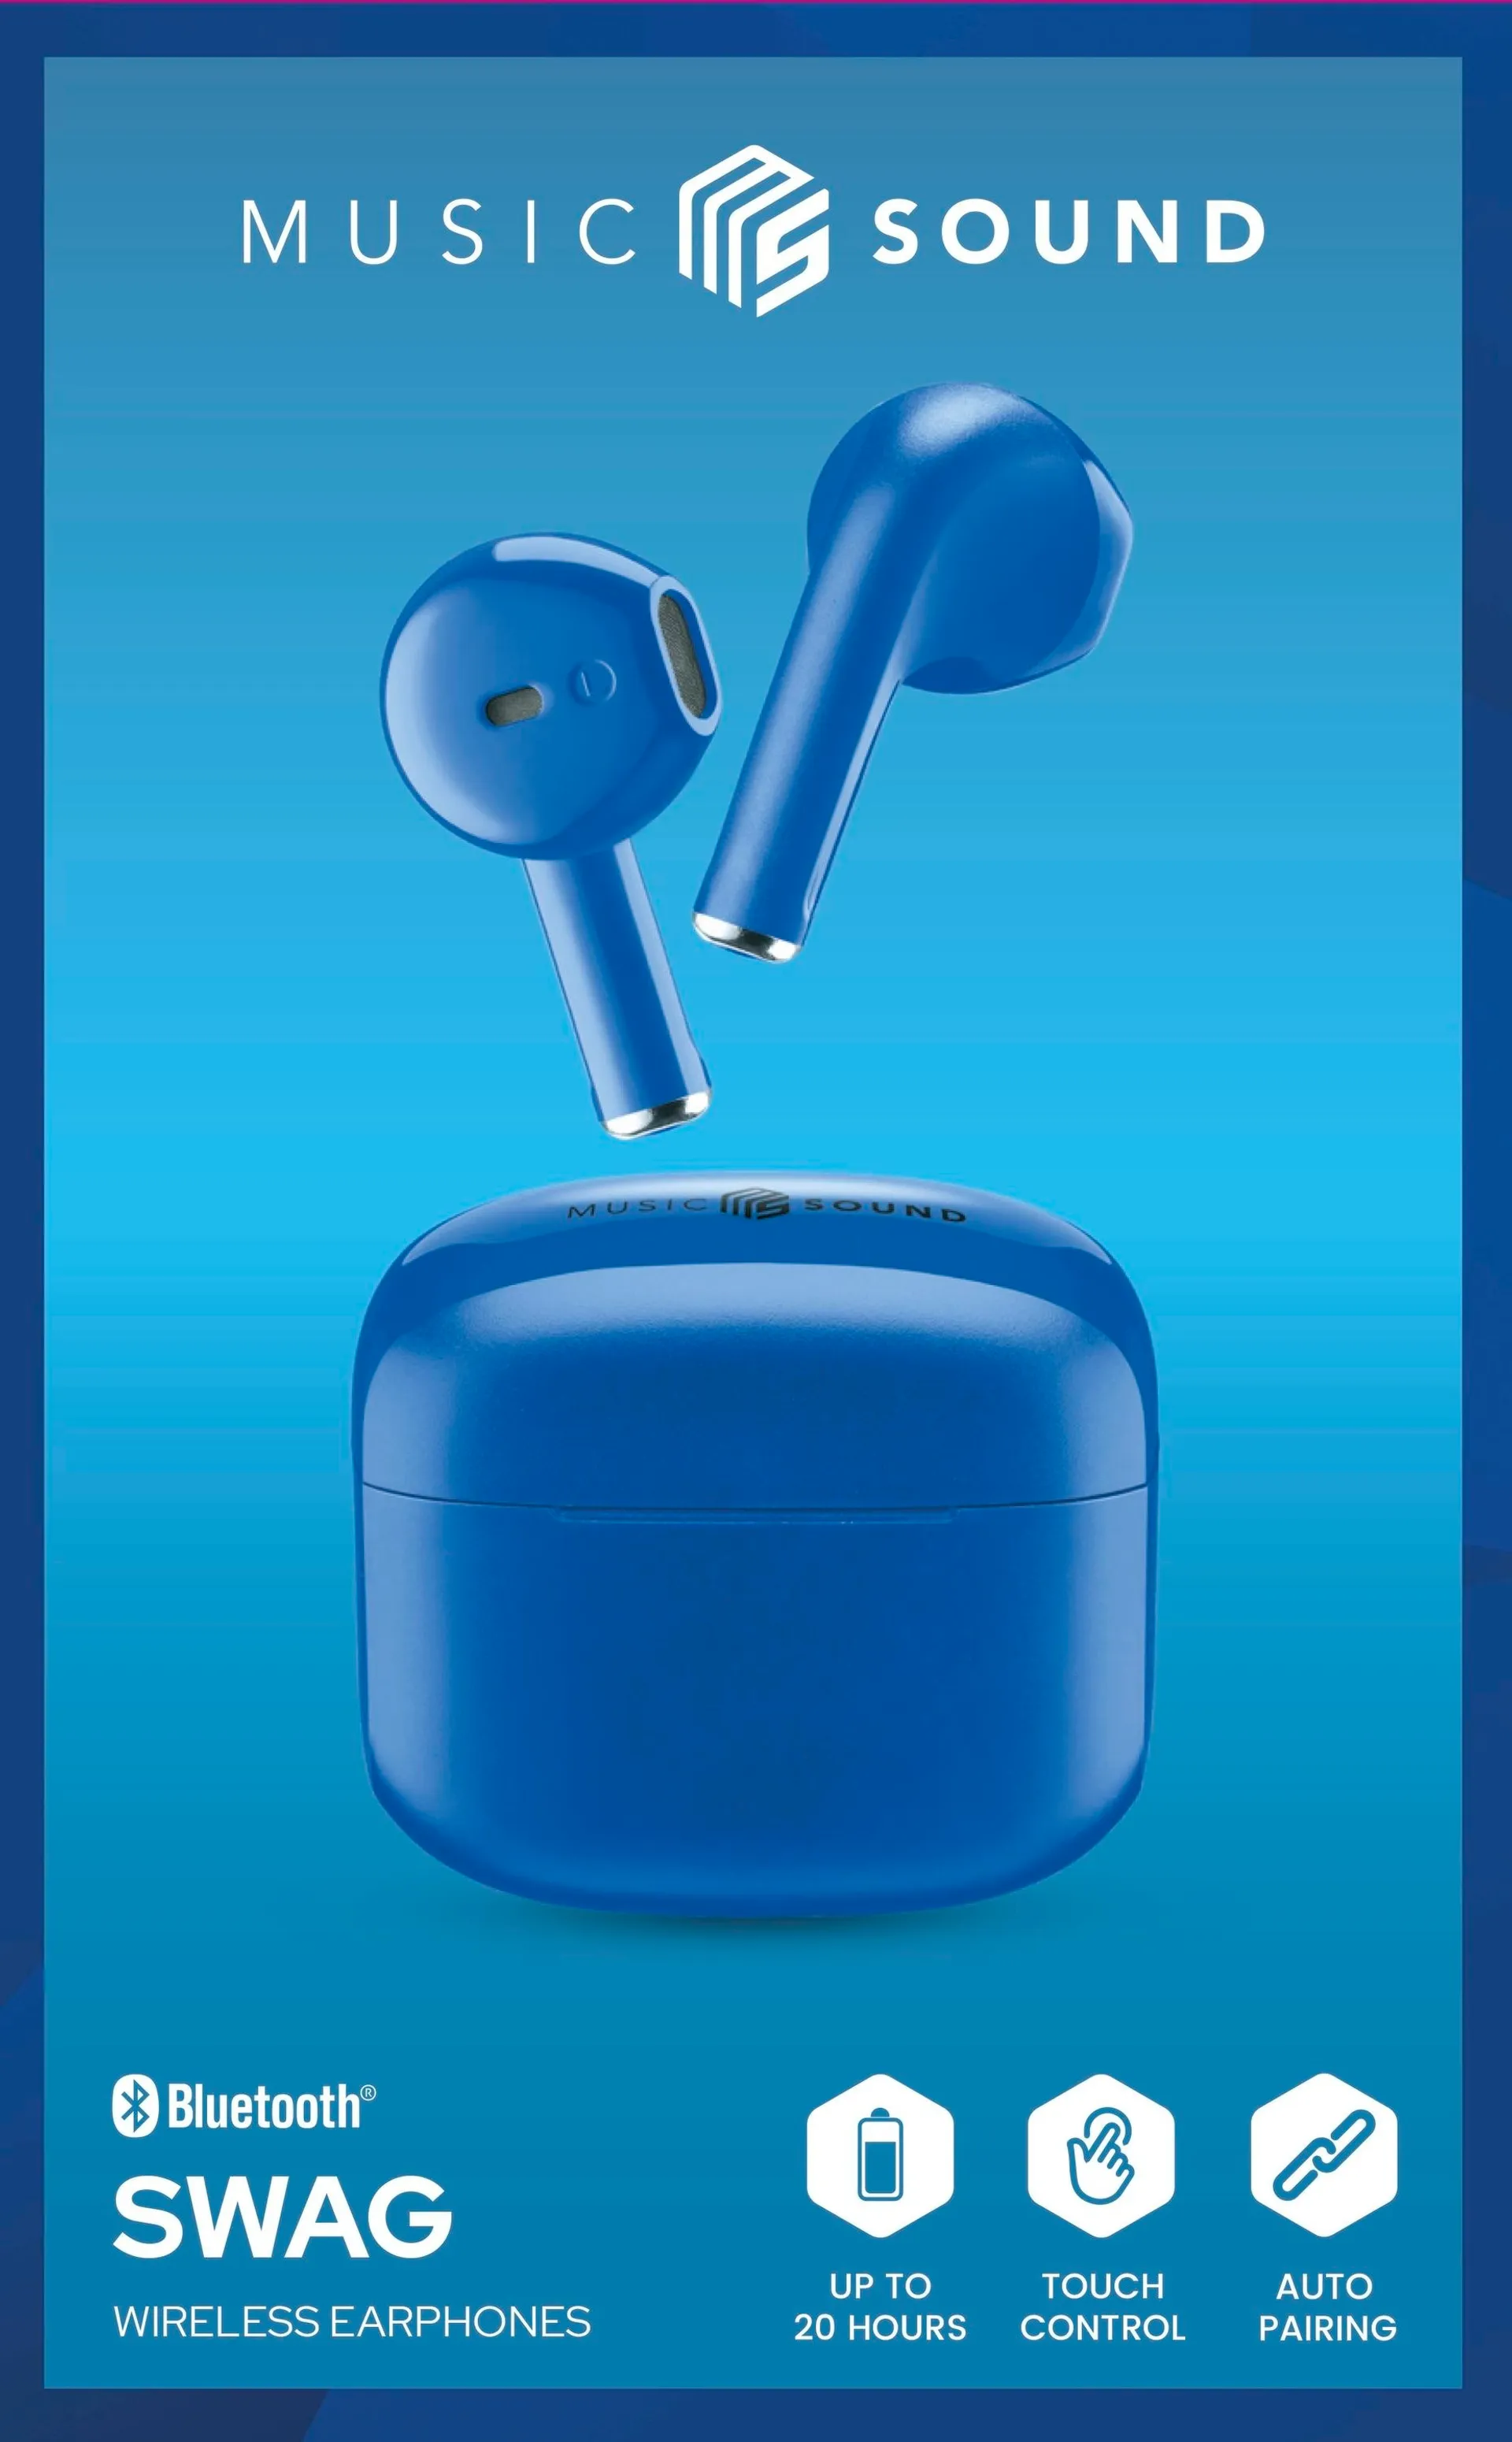 MusicSound Bluetooth nappikuulokkeet Swag sininen - 1